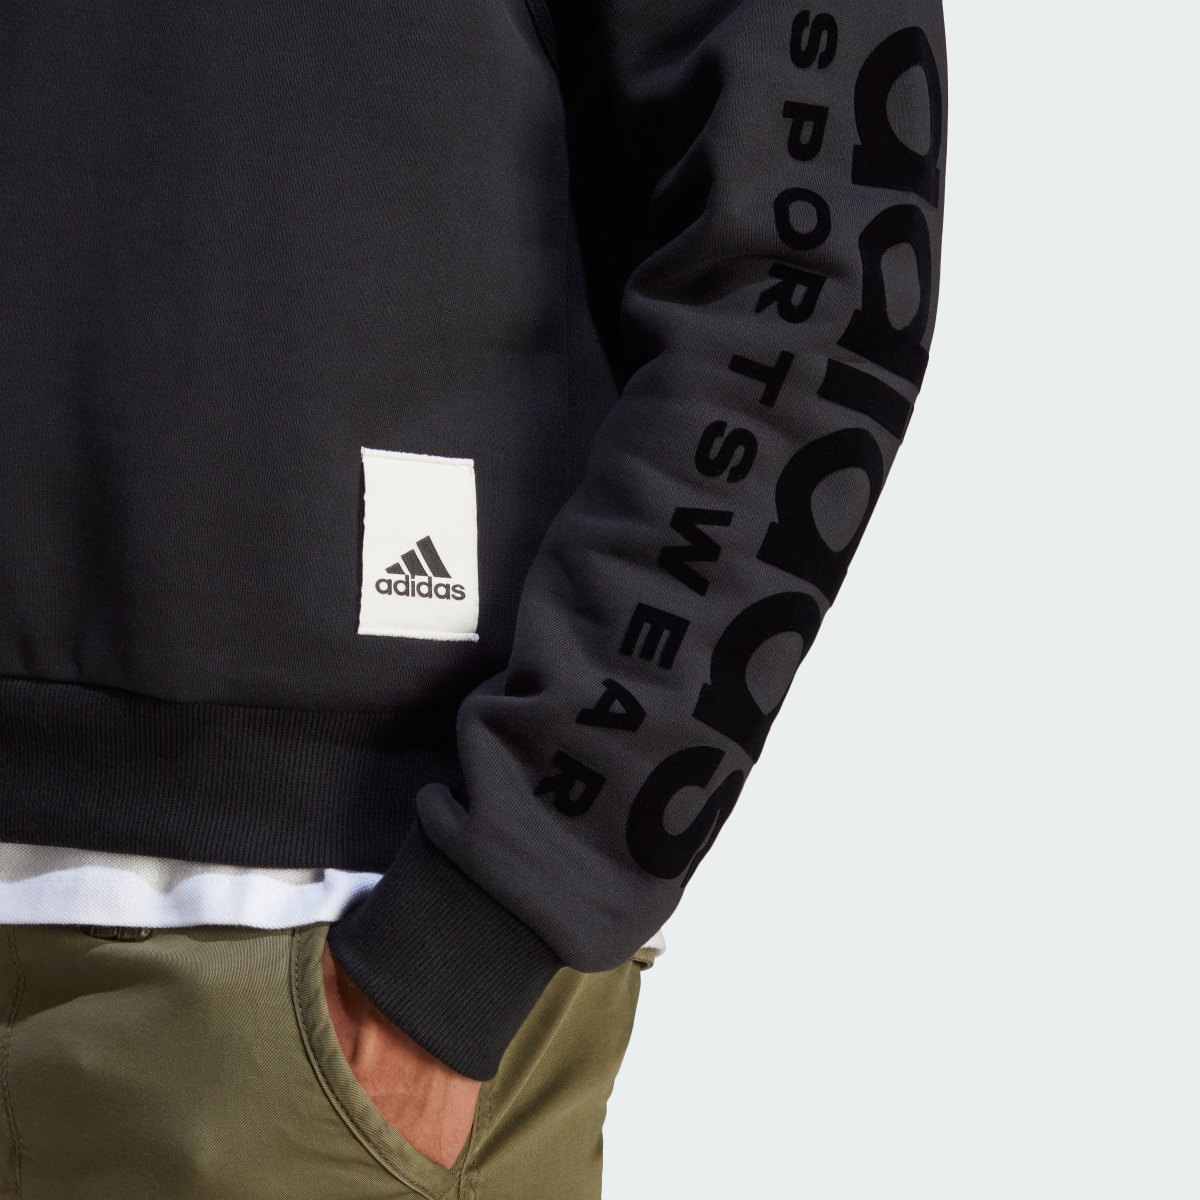 Adidas Lounge Fleece Sweatshirt. 8